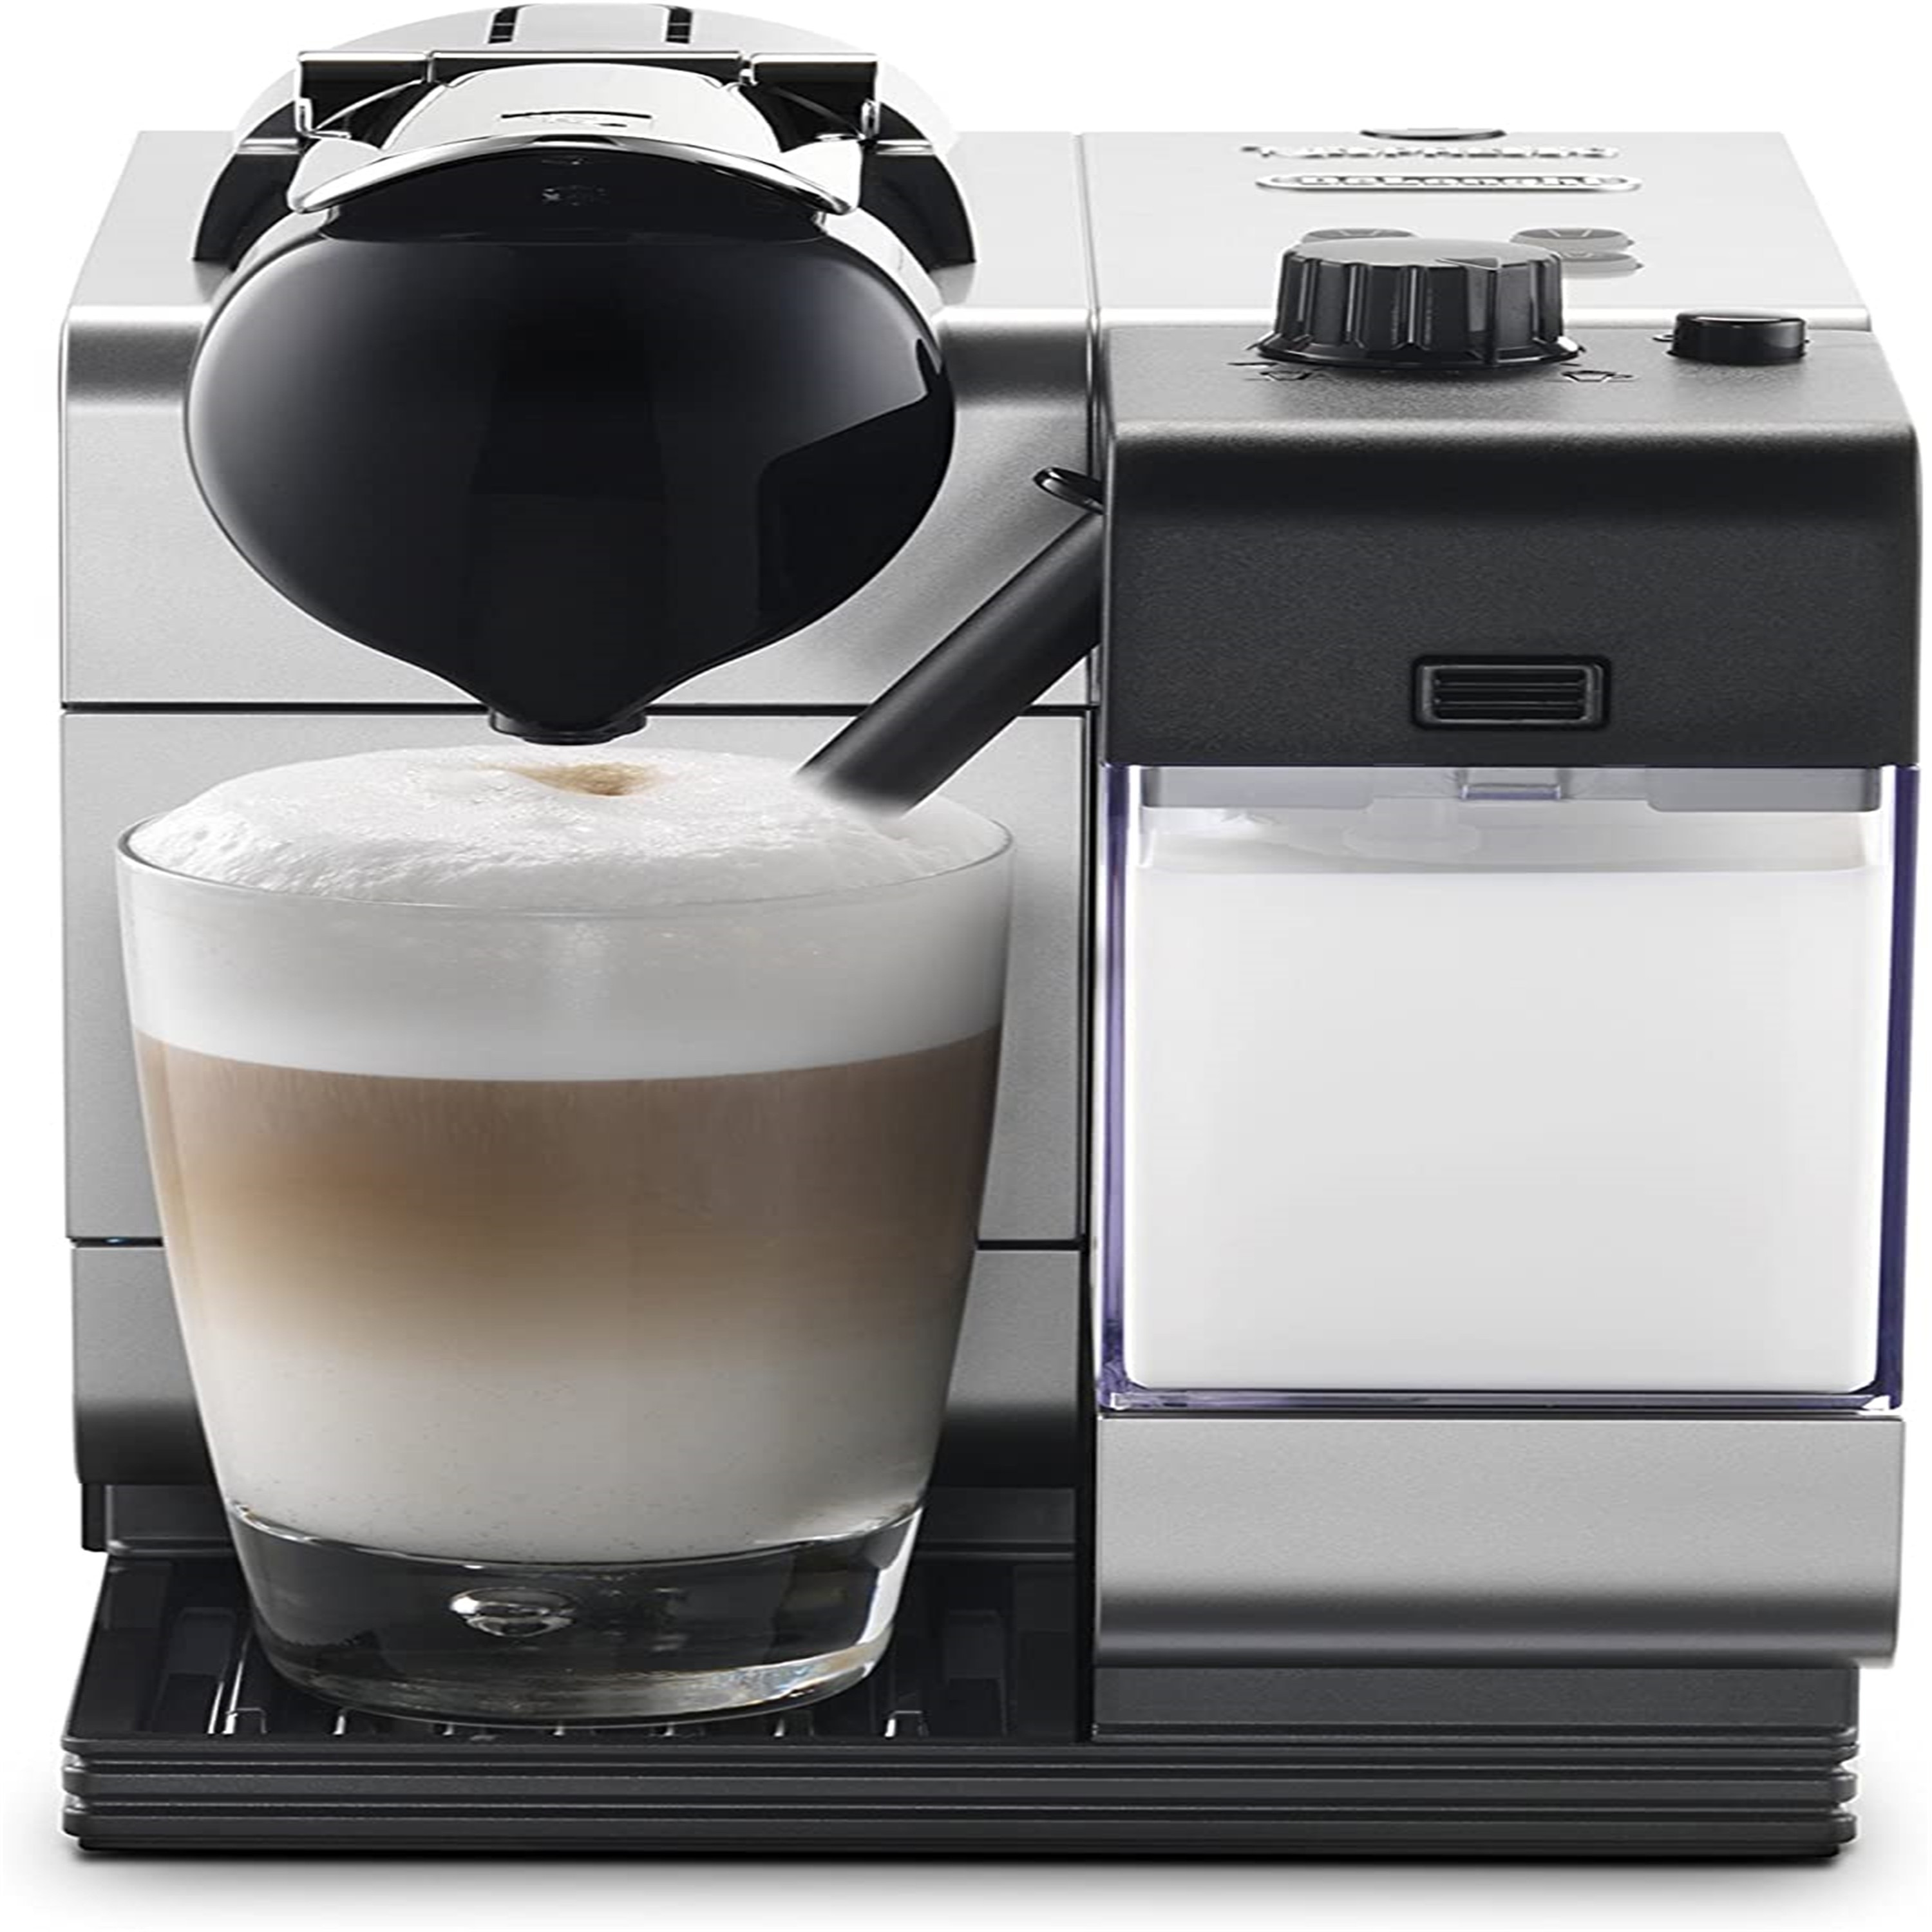 DeLonghi Nespresso Lattissima Touch Espresso Machine 